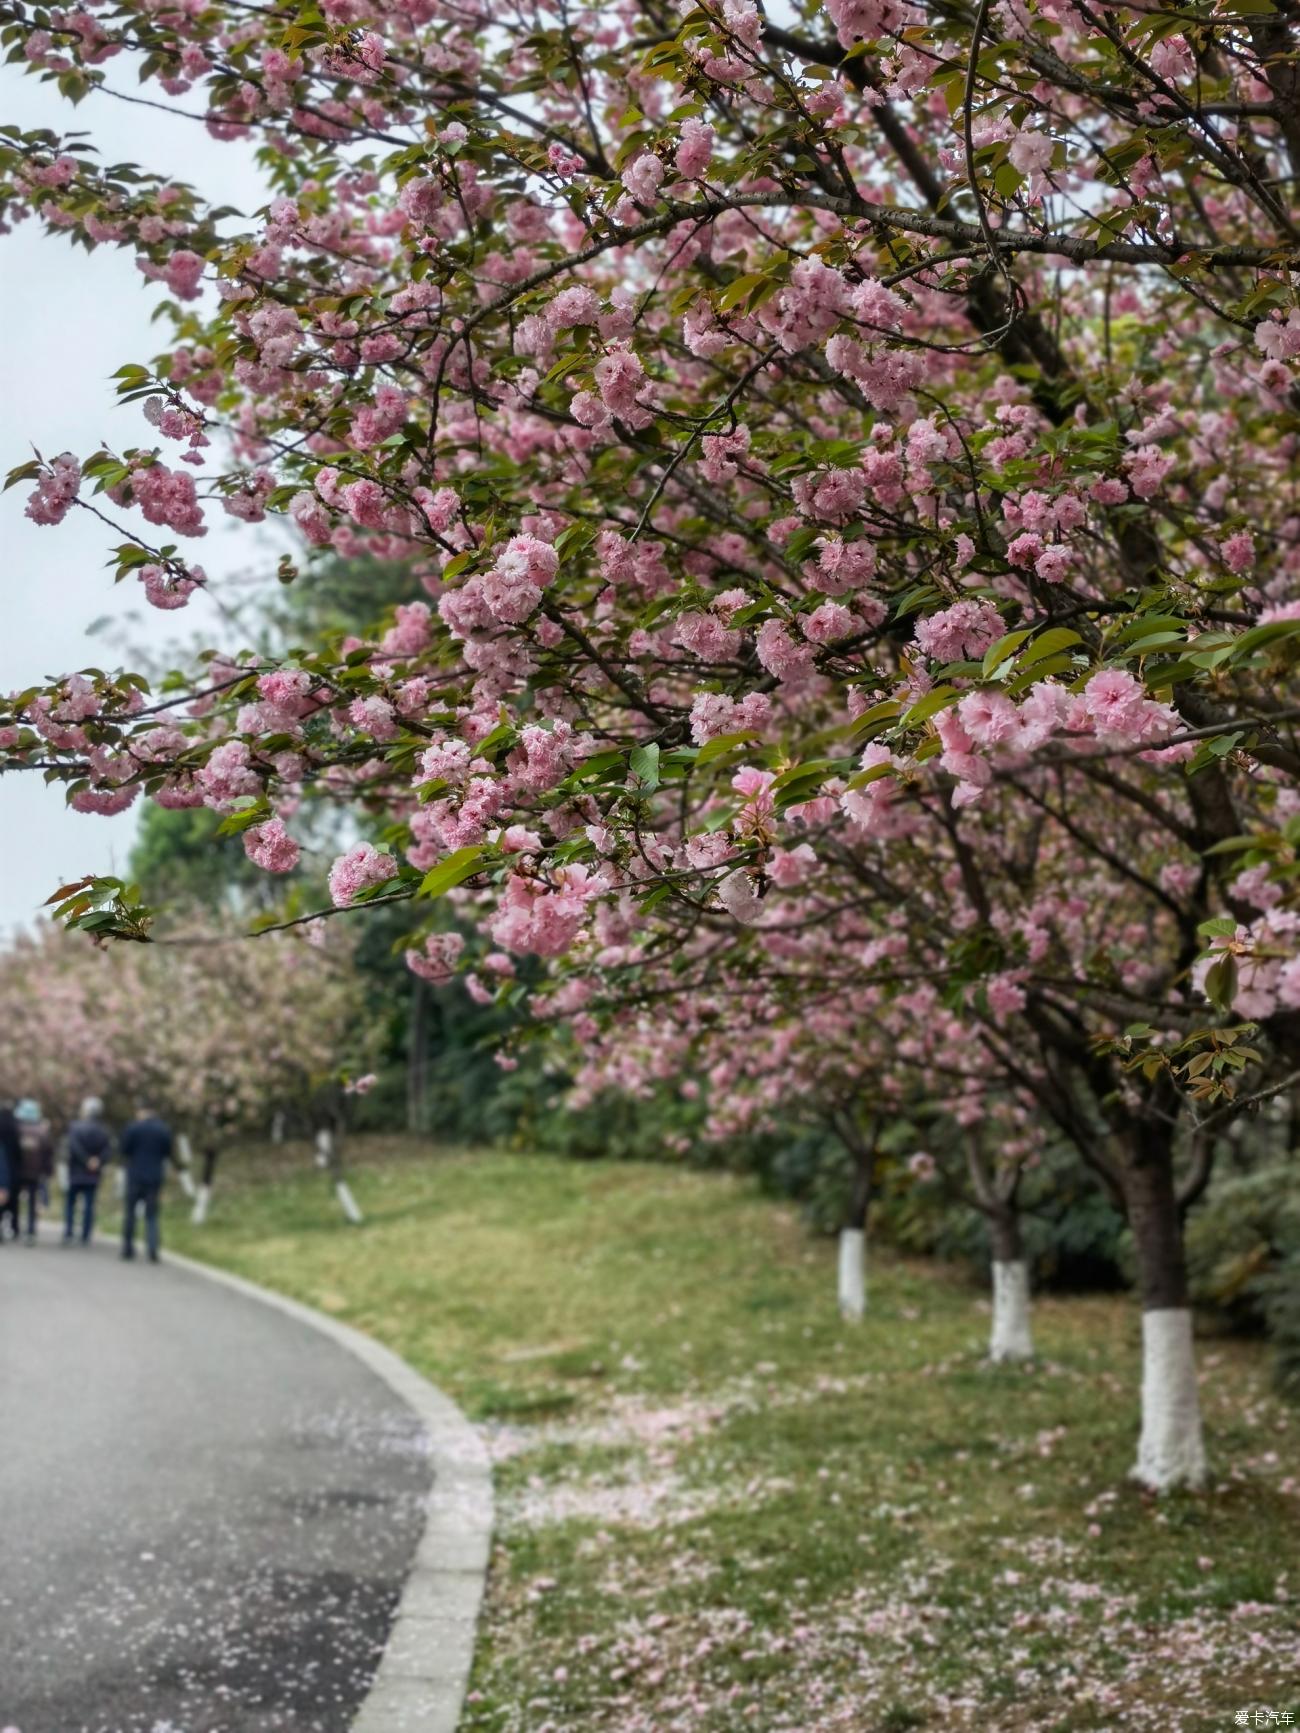 青白江凤凰湖的樱花开繁了